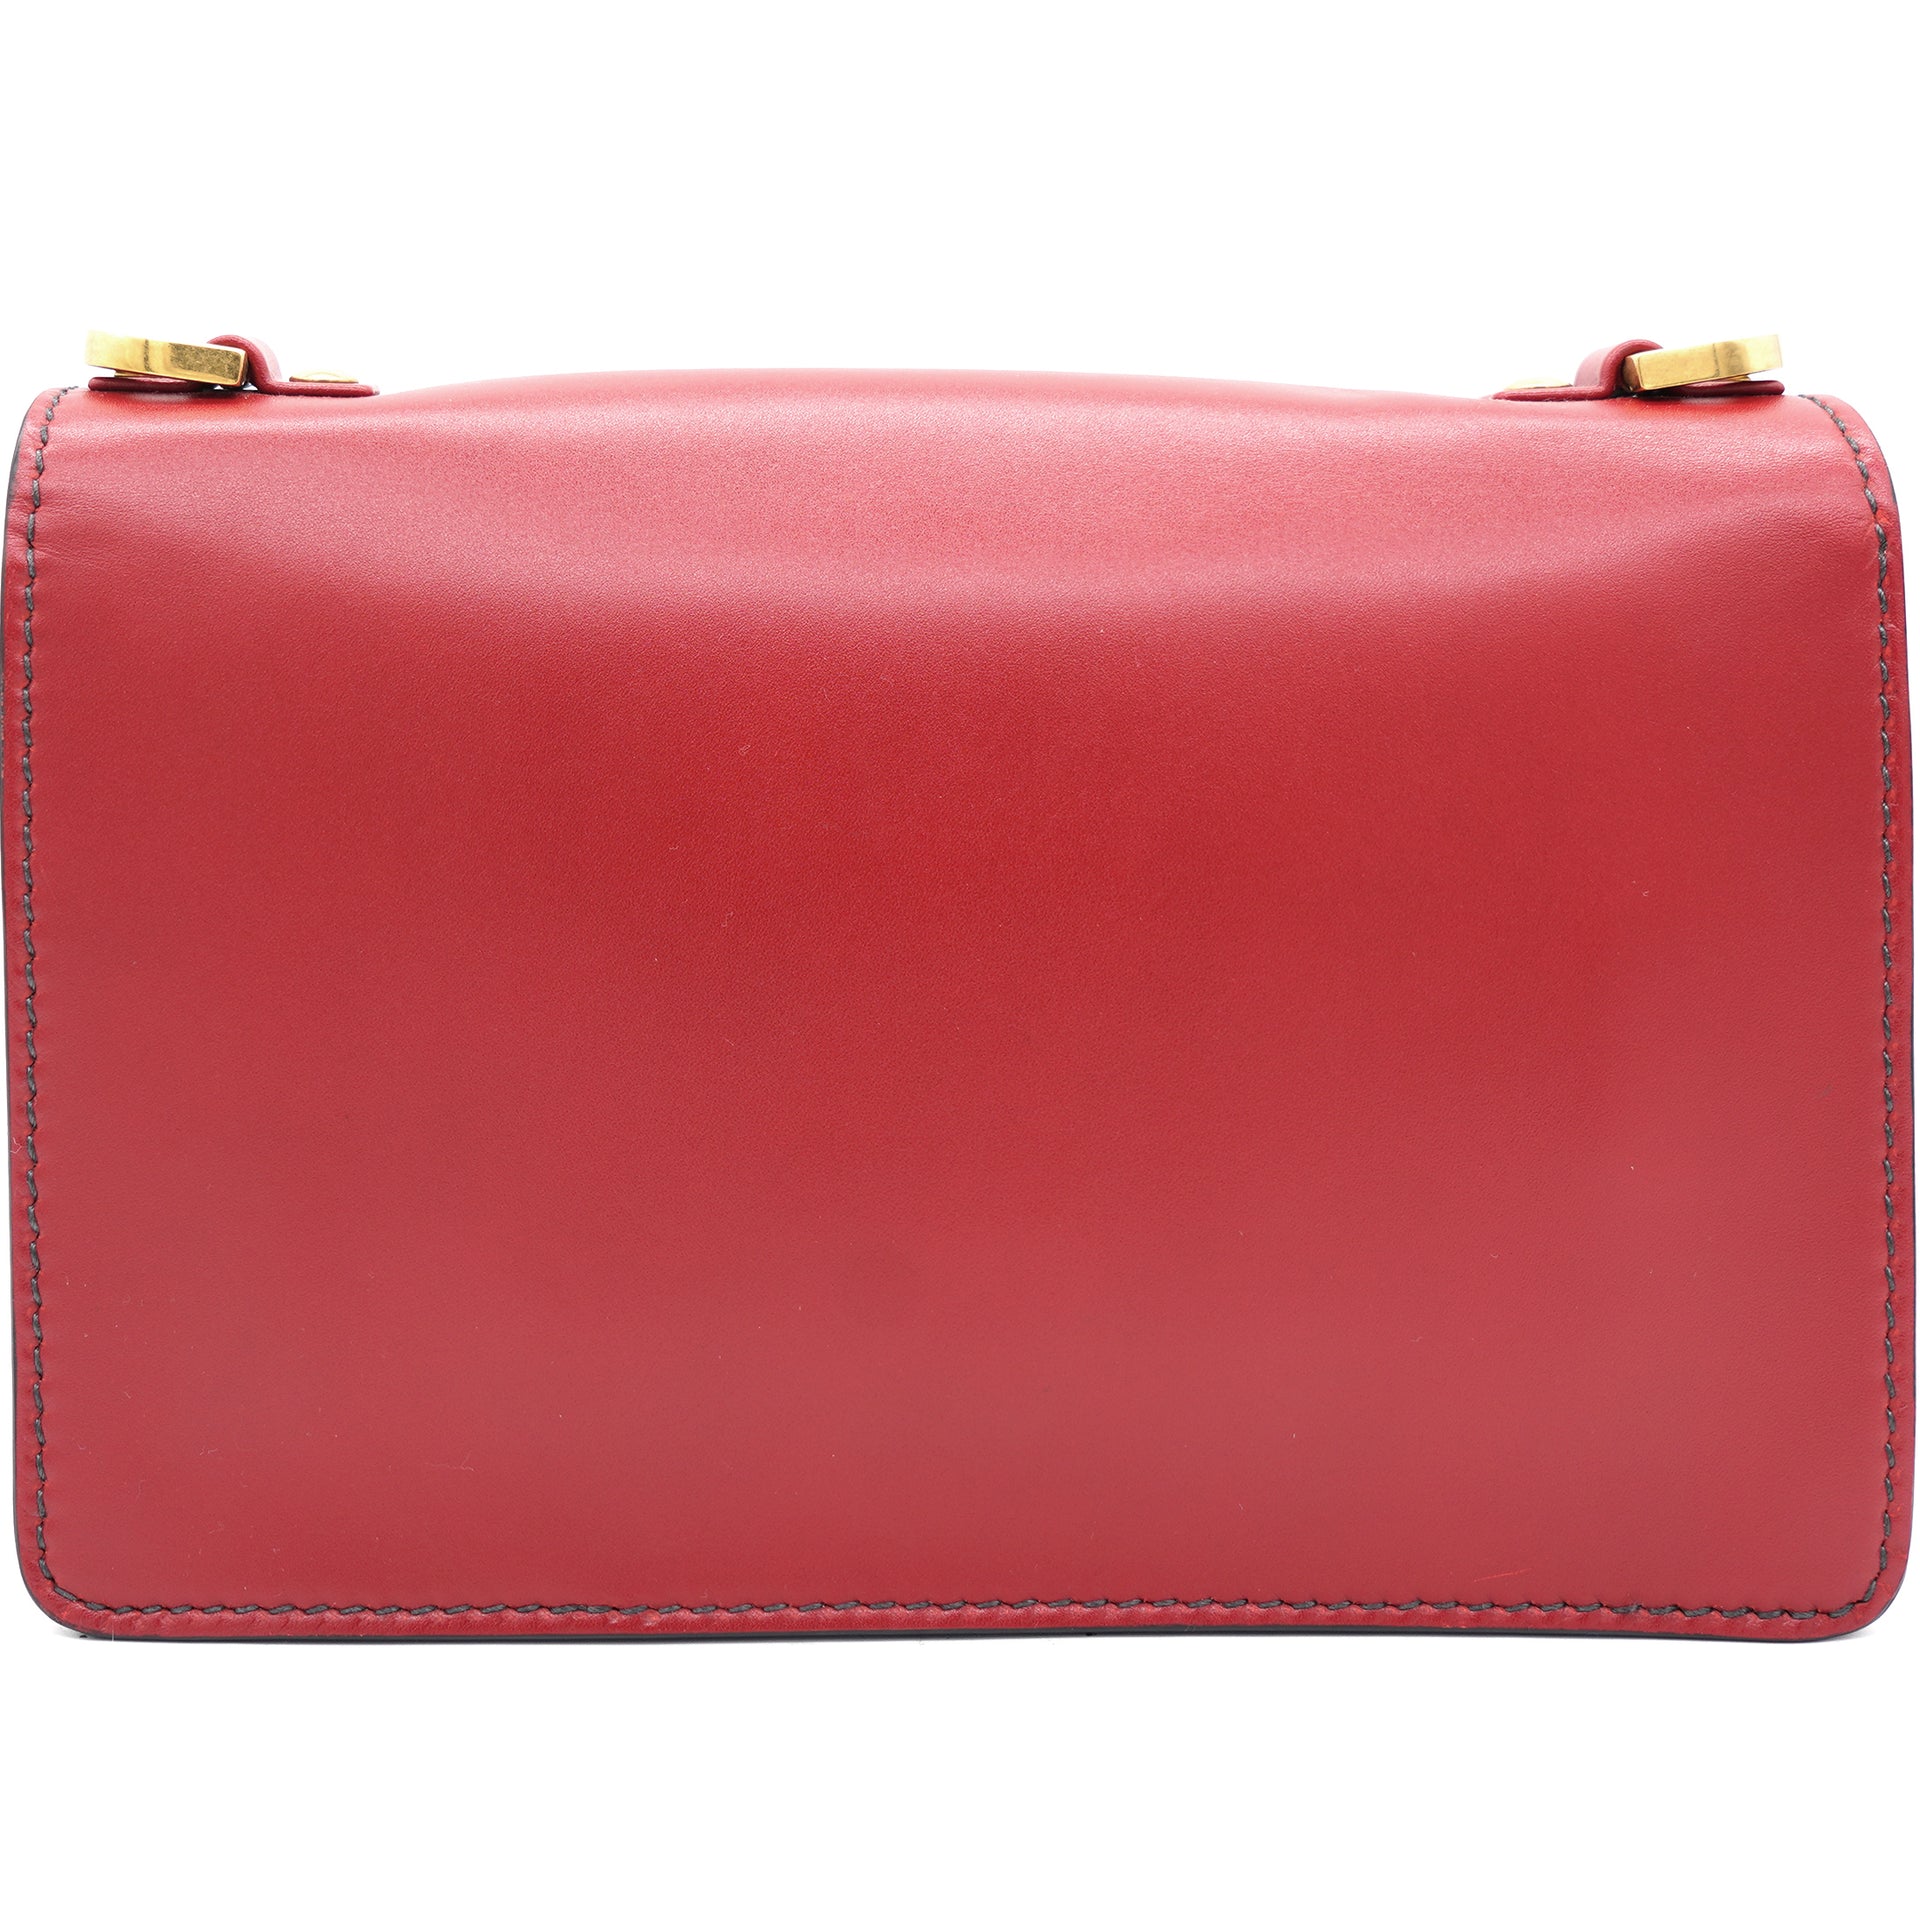 Jadior Red Shoulder Bag